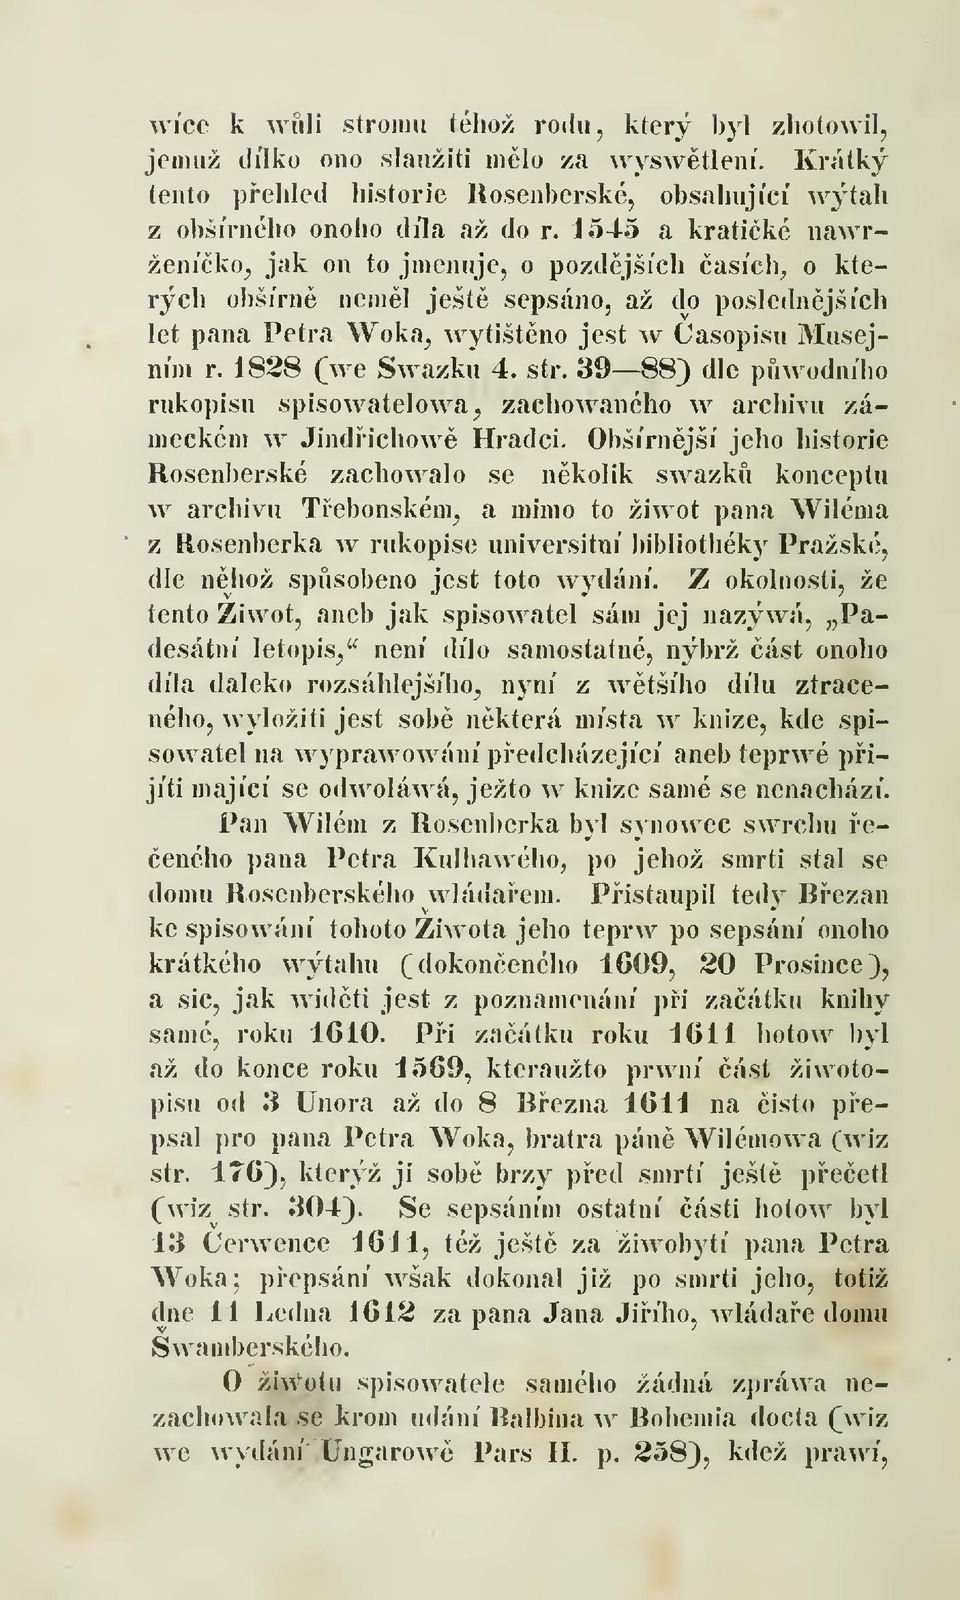 str. 39 88) dle pwodního rukopisu spisowatelowa, zachowaného w archivu zámeckém w Jindrichow Hradci.